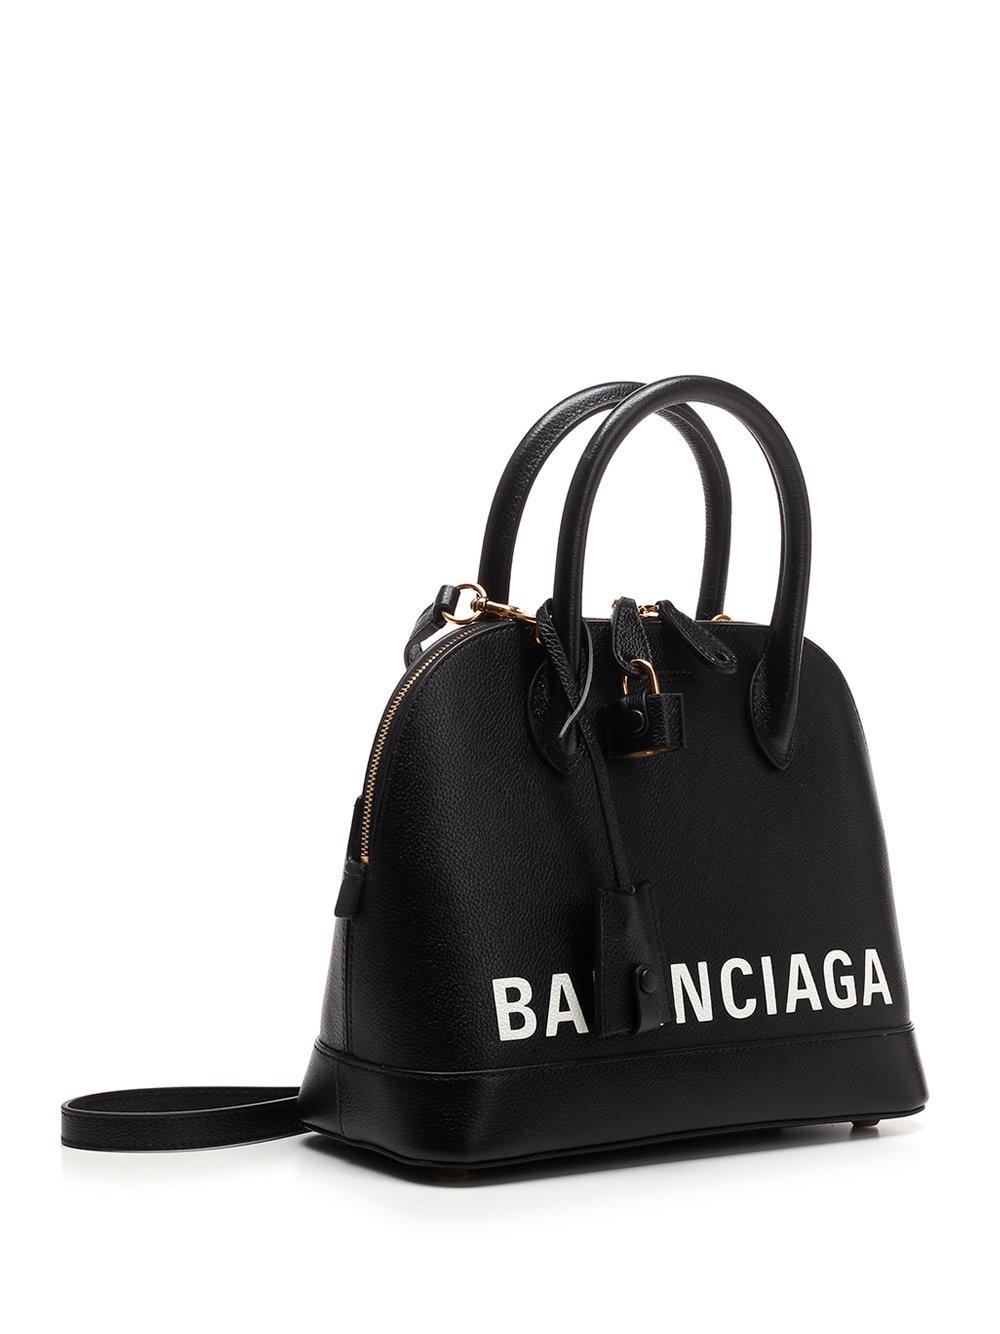 Balenciaga Ville Small Leather Handbag in Nero (Black) | Lyst